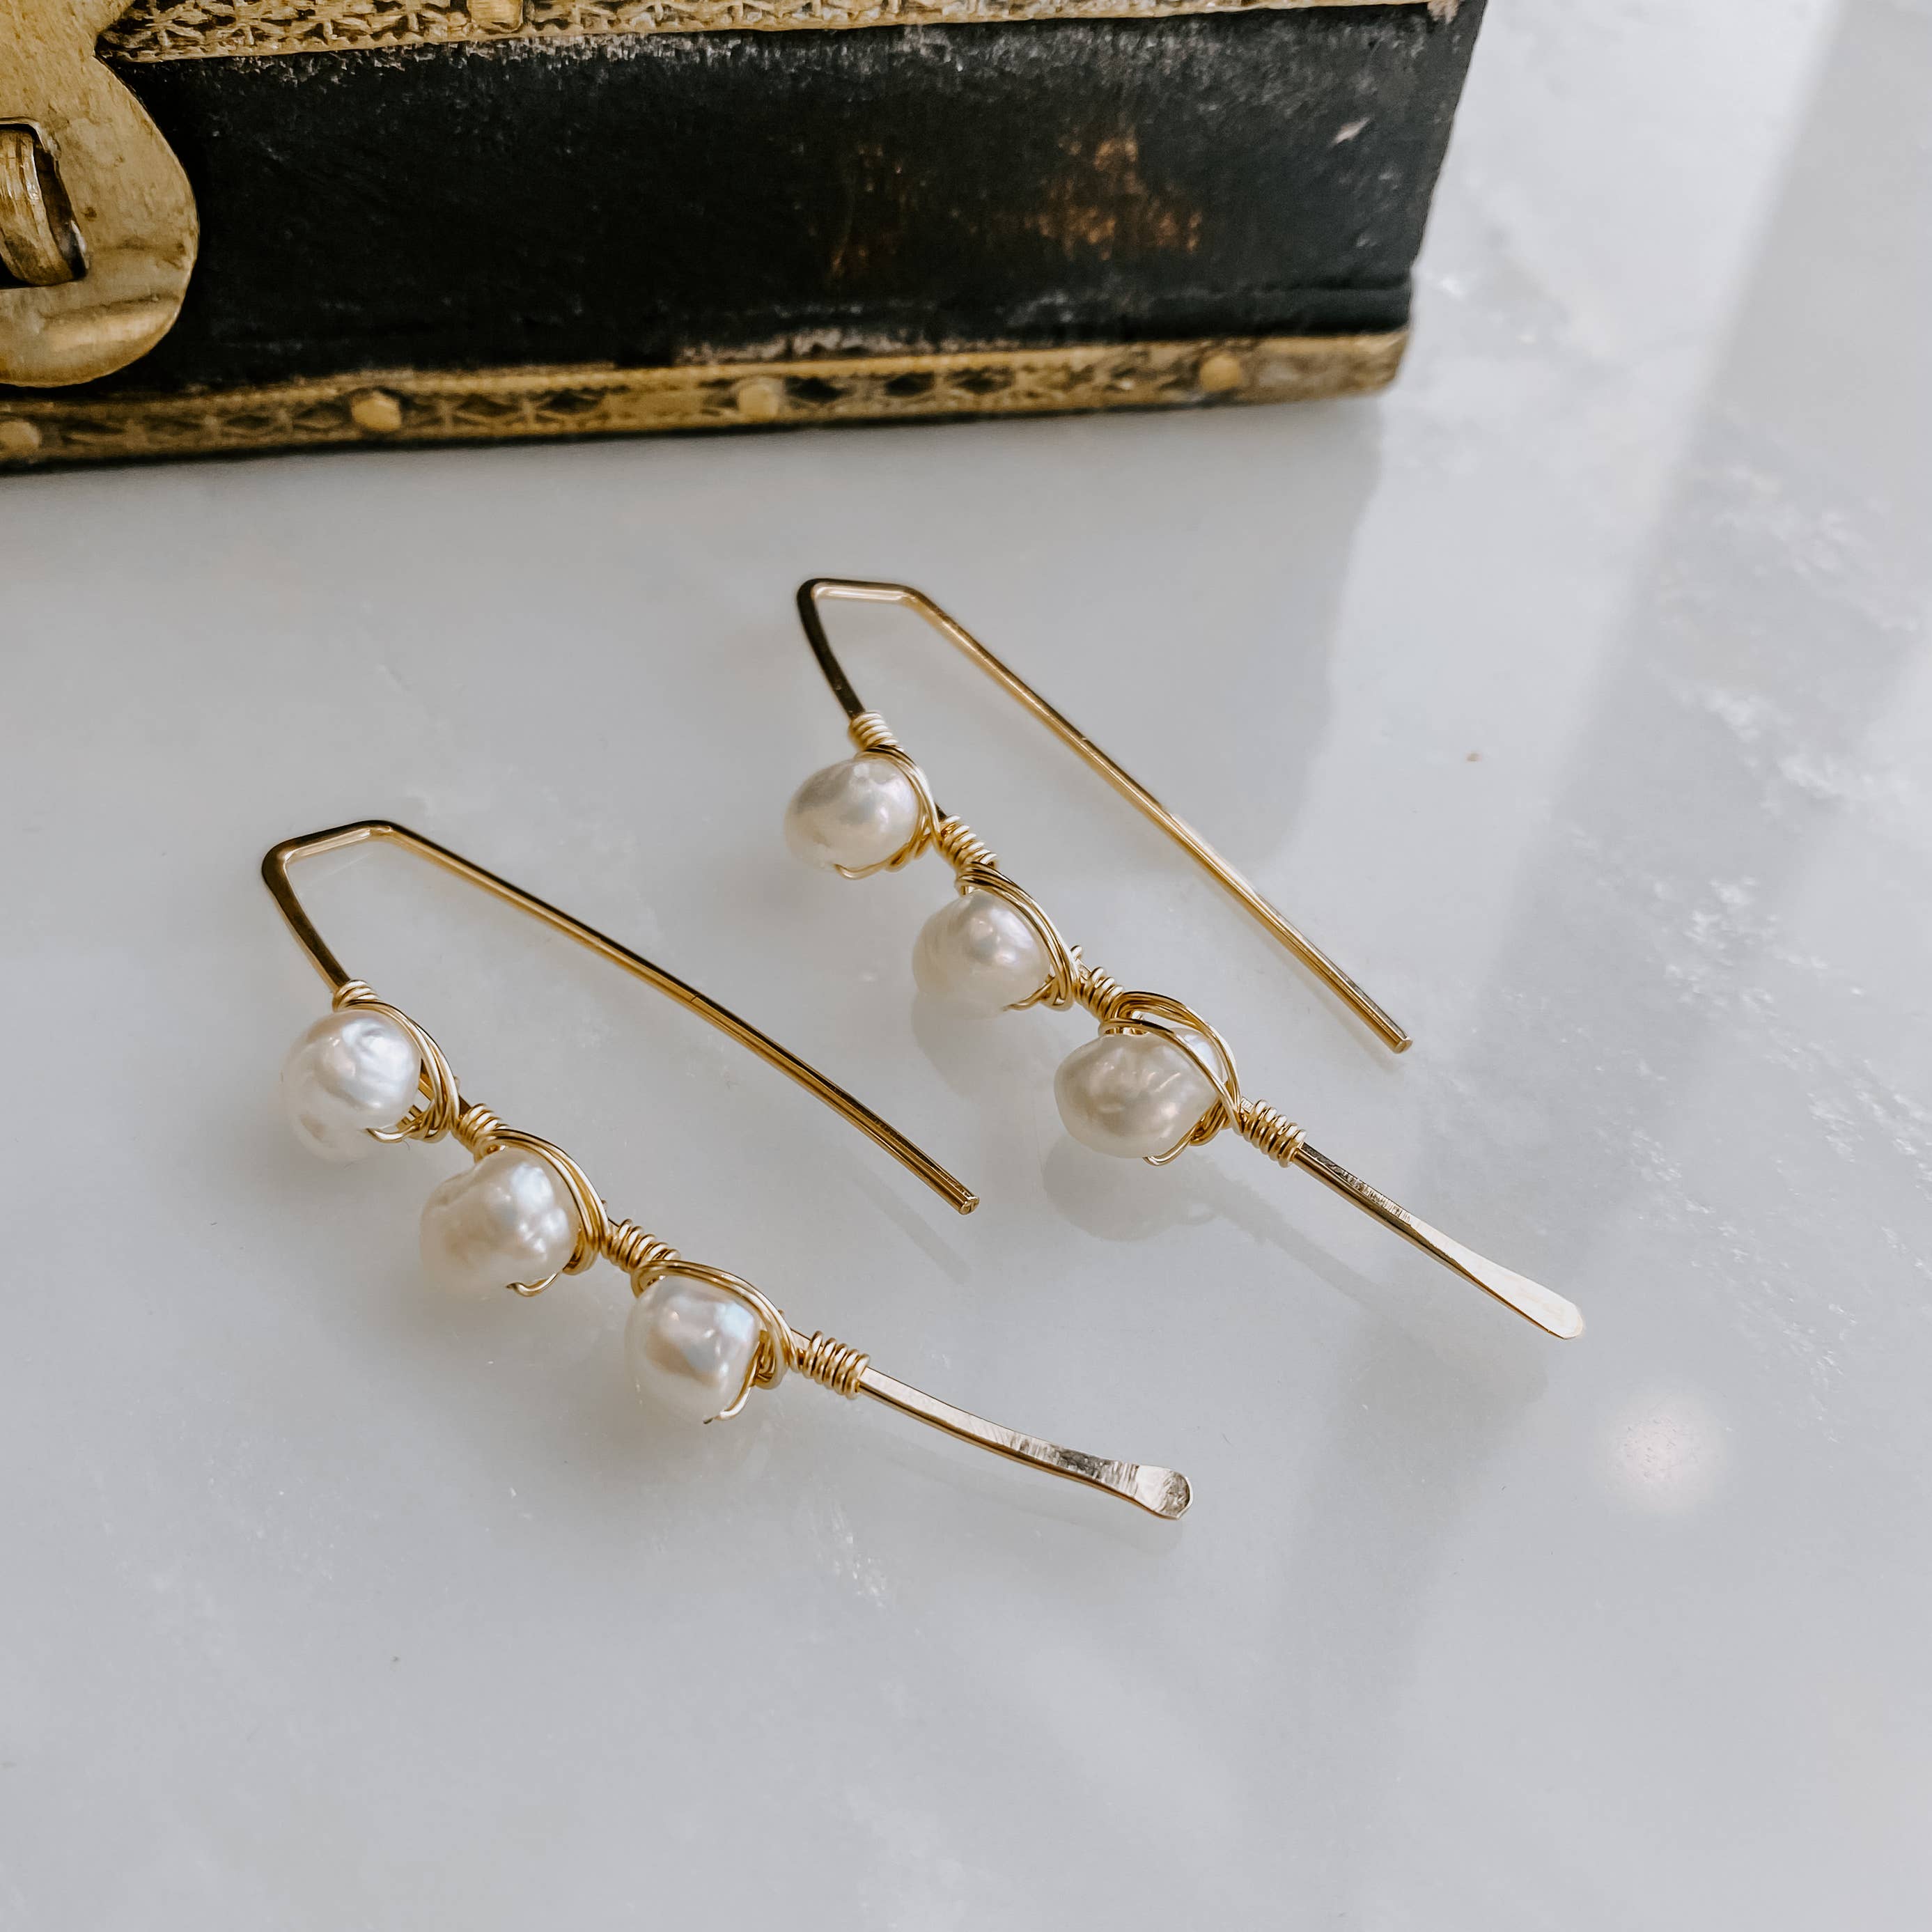 pearl earring threaders